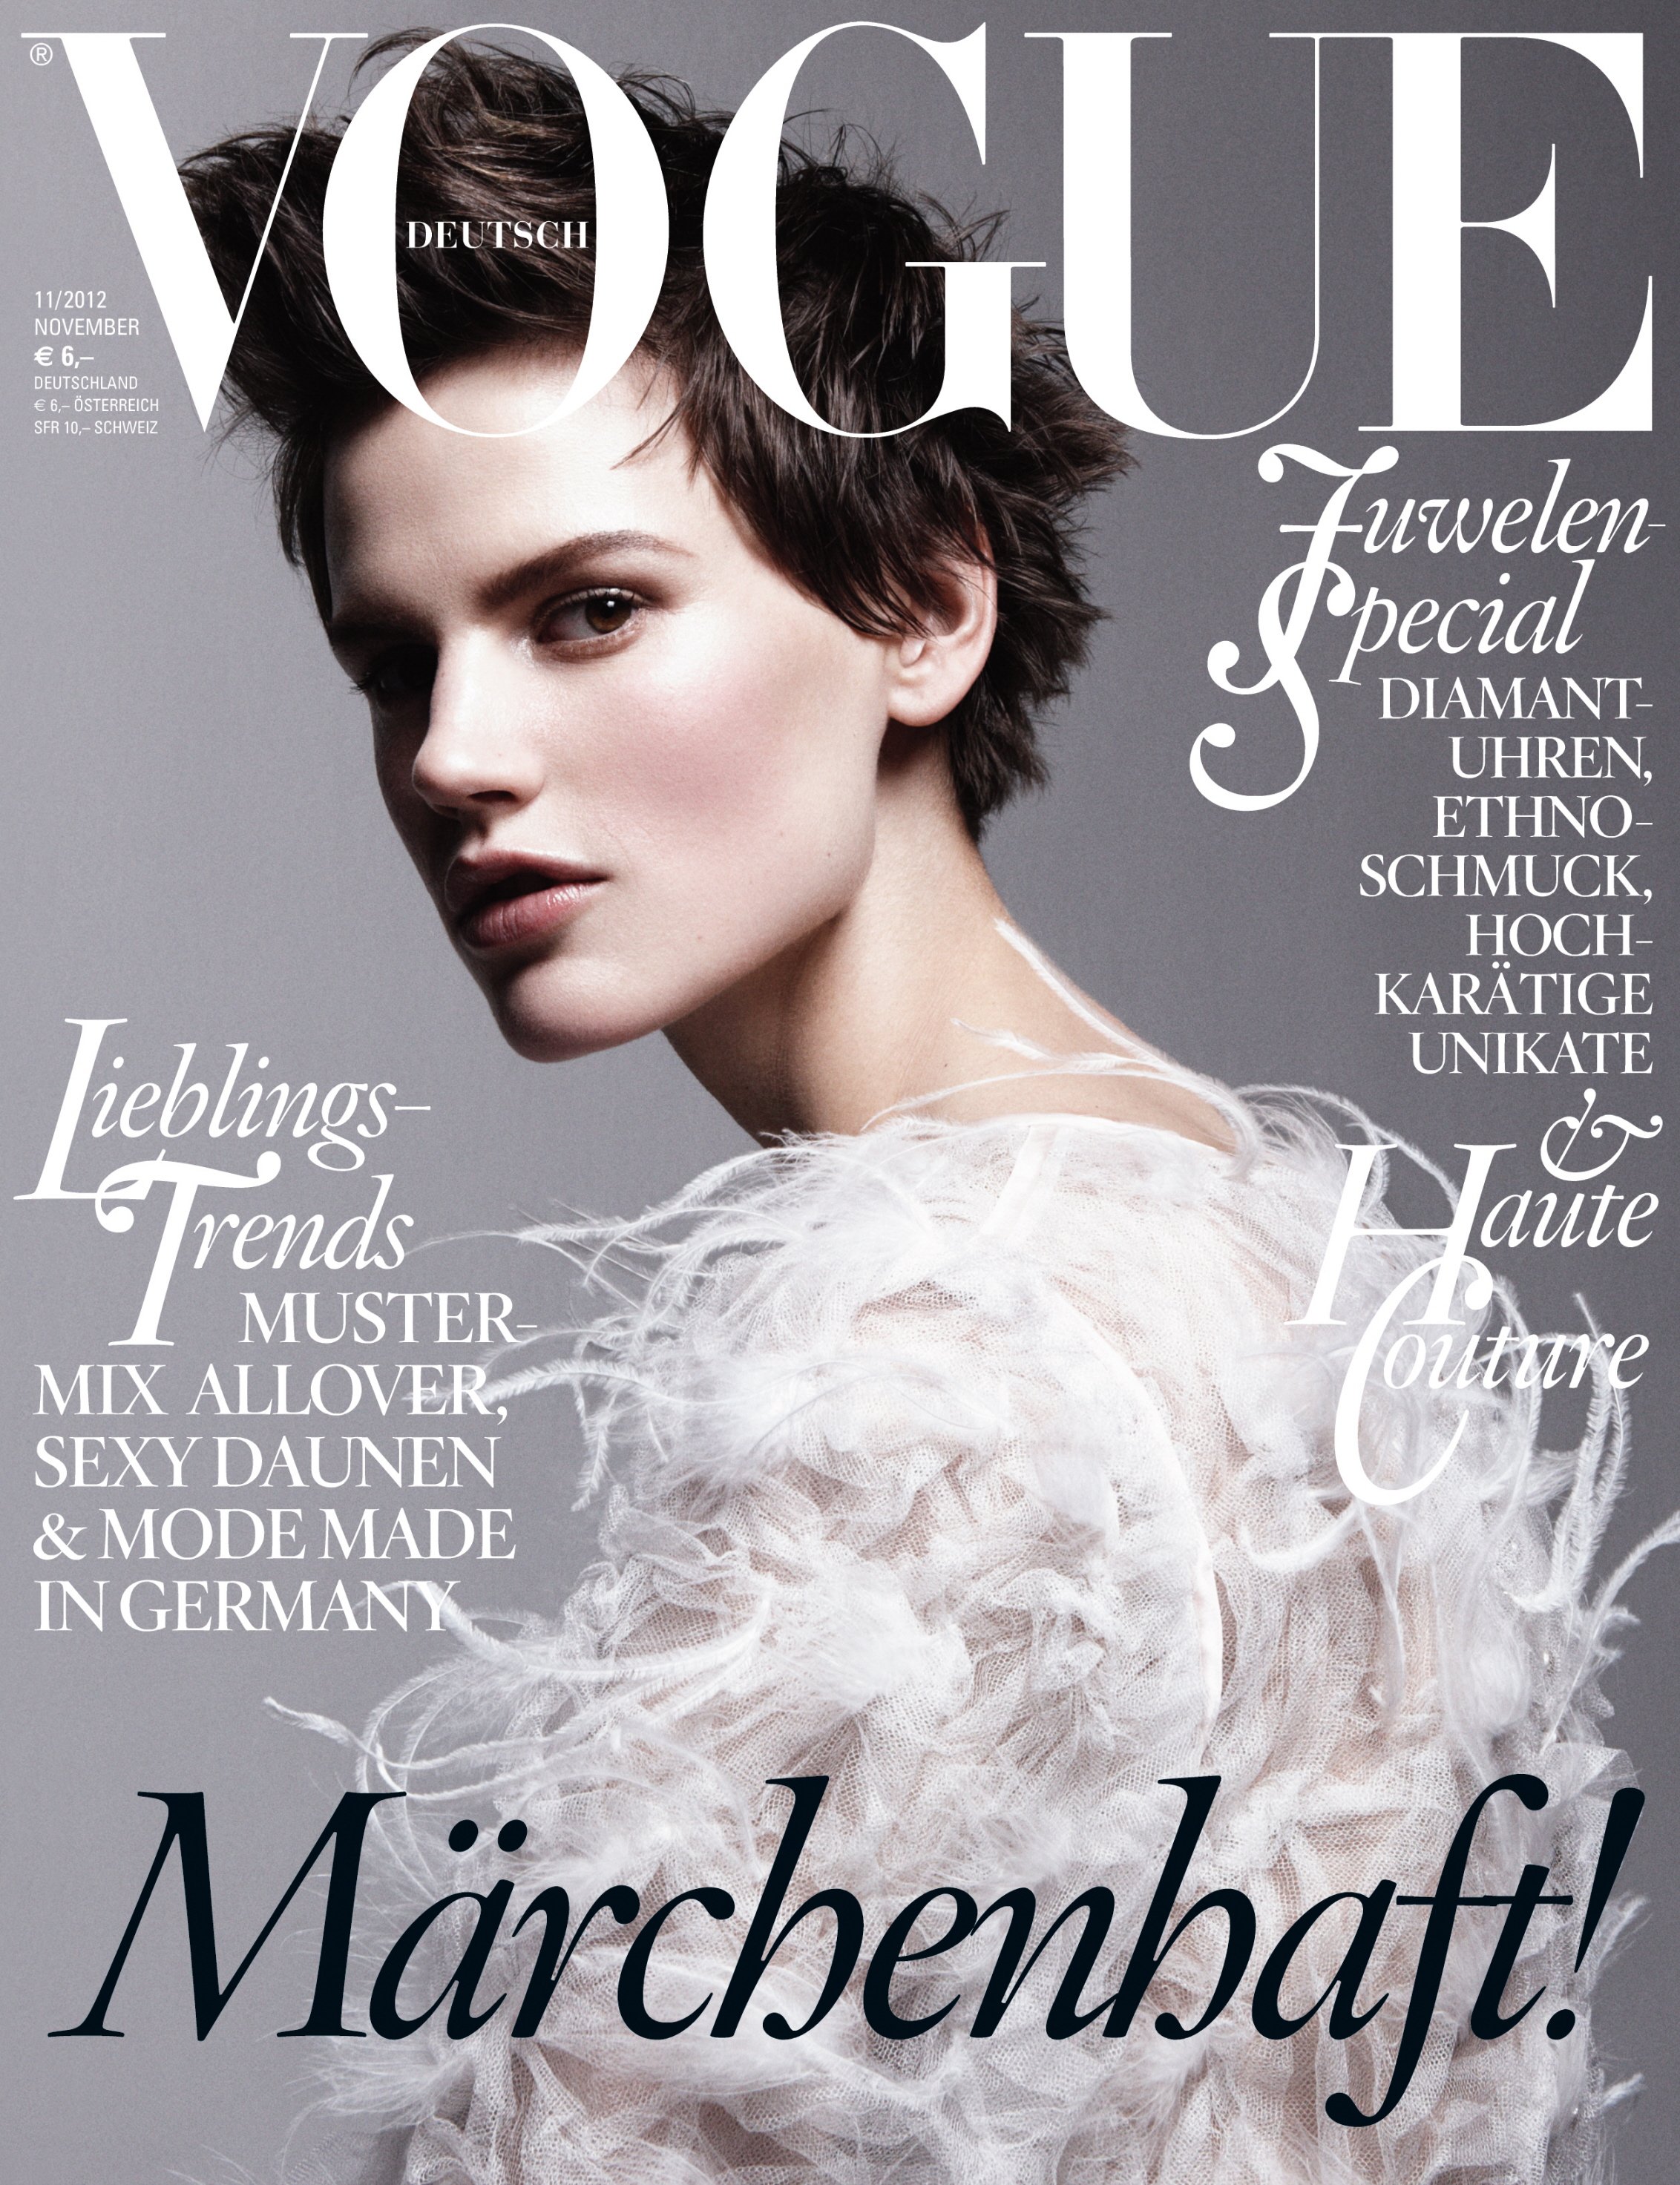 Saskia-de-Brauw-for-Vogue-Germany-November-2012.jpg